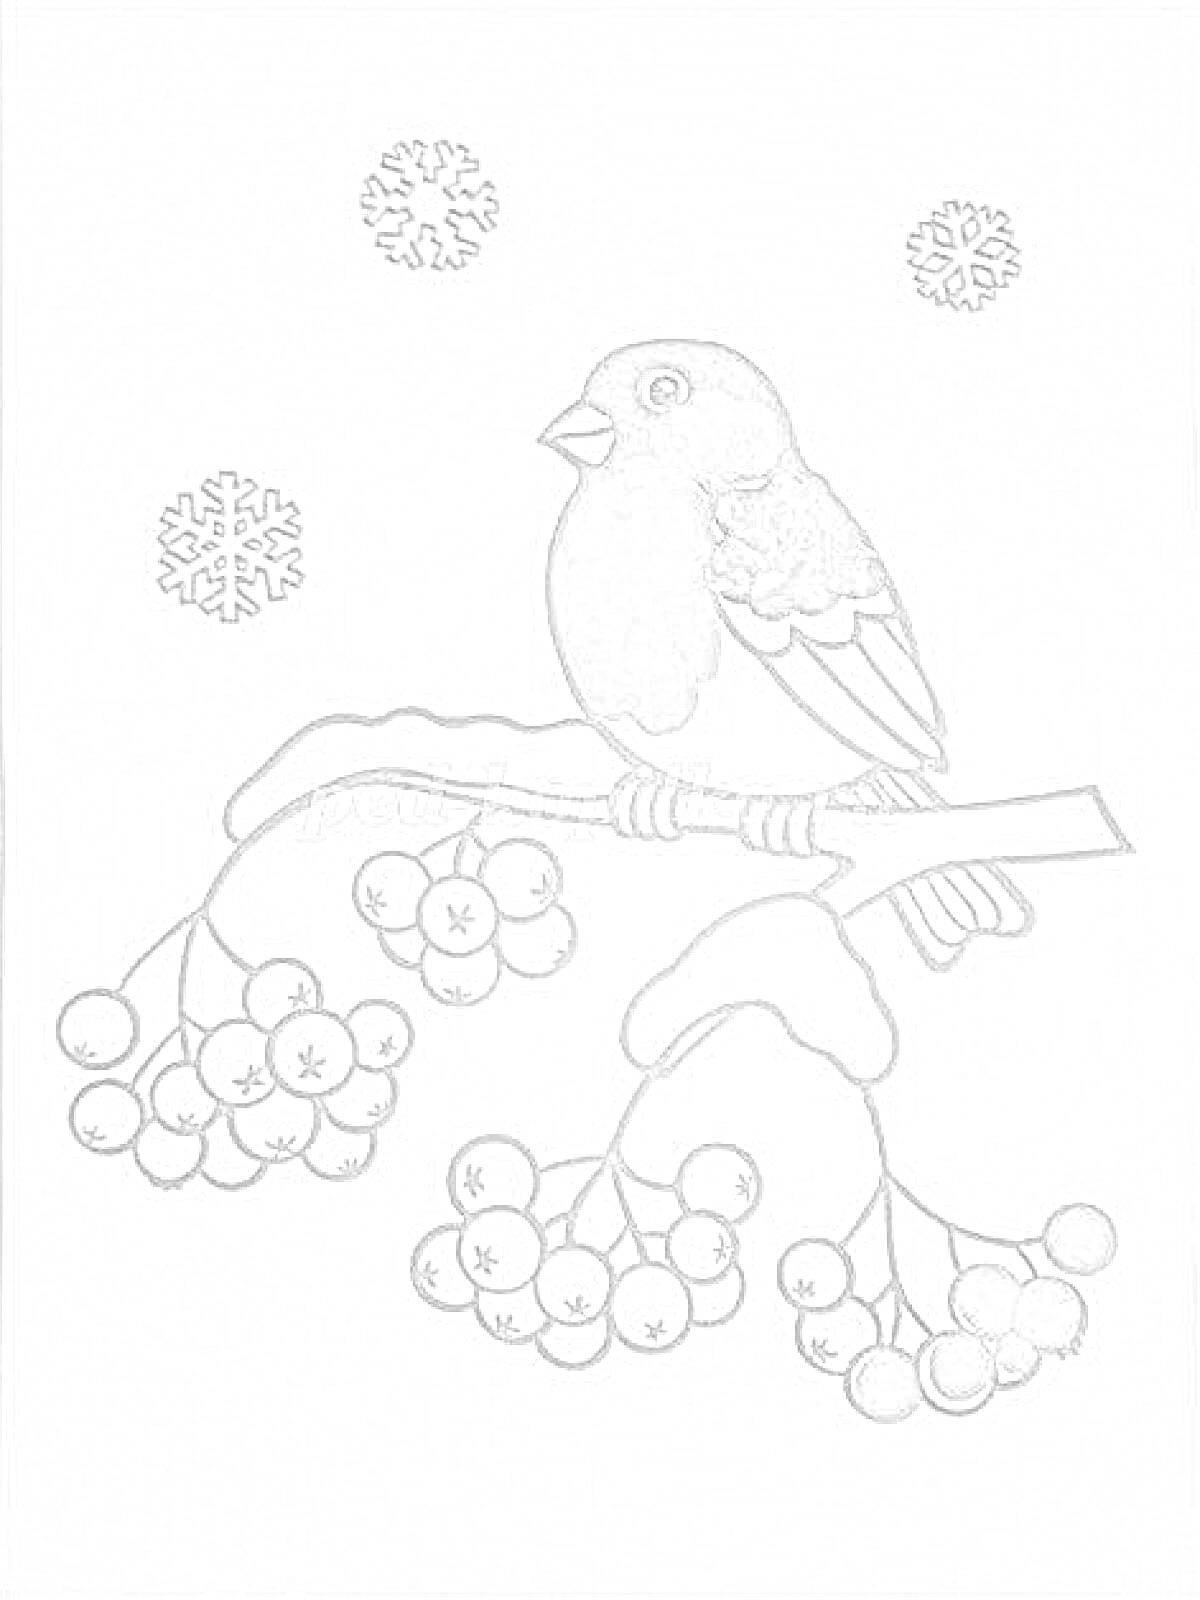 Раскраска Снегирь на ветке рябины зимой с ягодами и снежинками